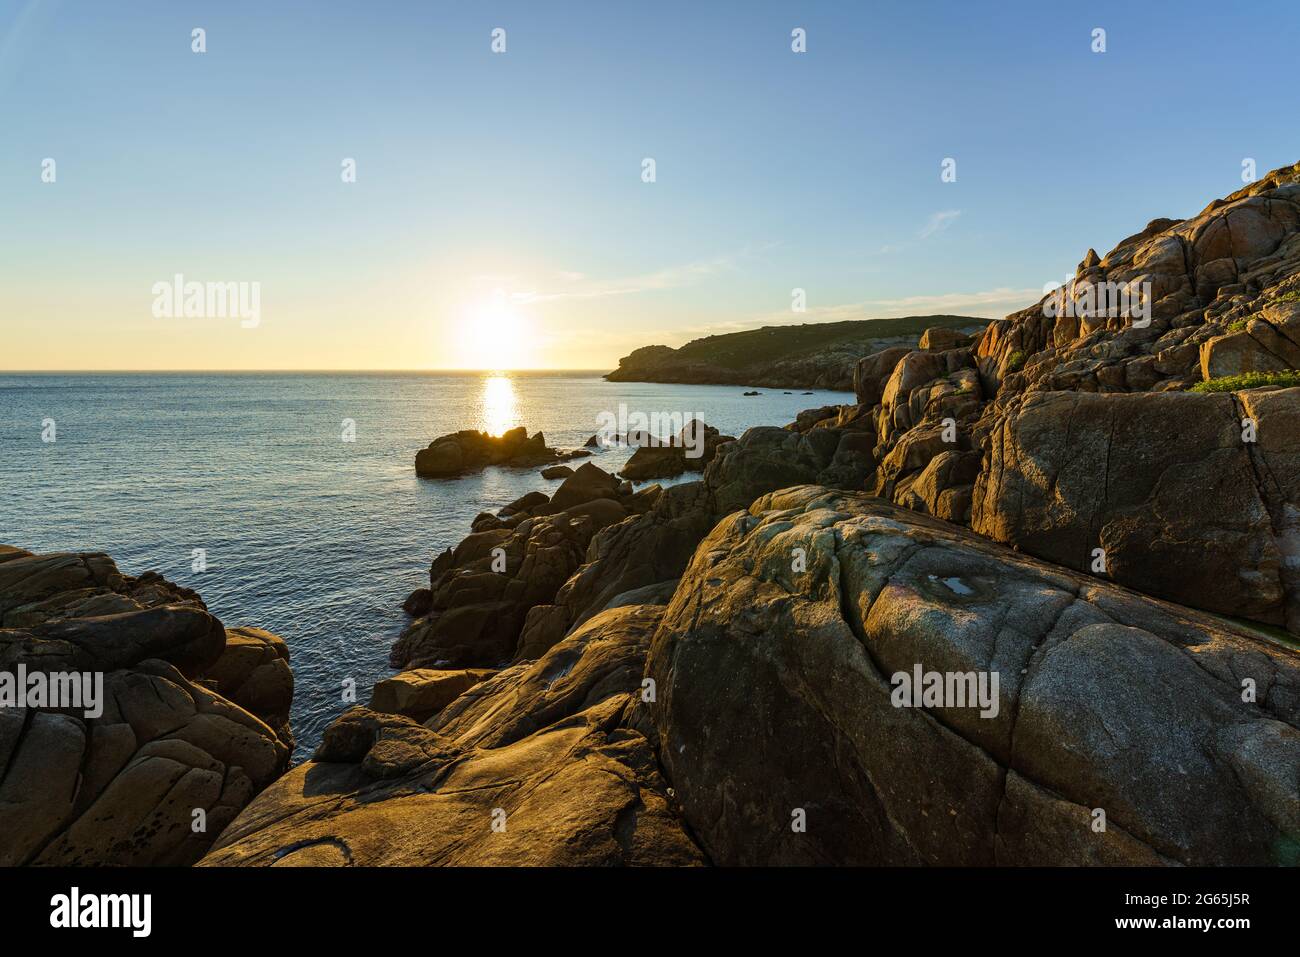 Ambiance tranquille. Coucher de soleil sur la mer calme, Océan Atlantique, Galice, Espagne Banque D'Images